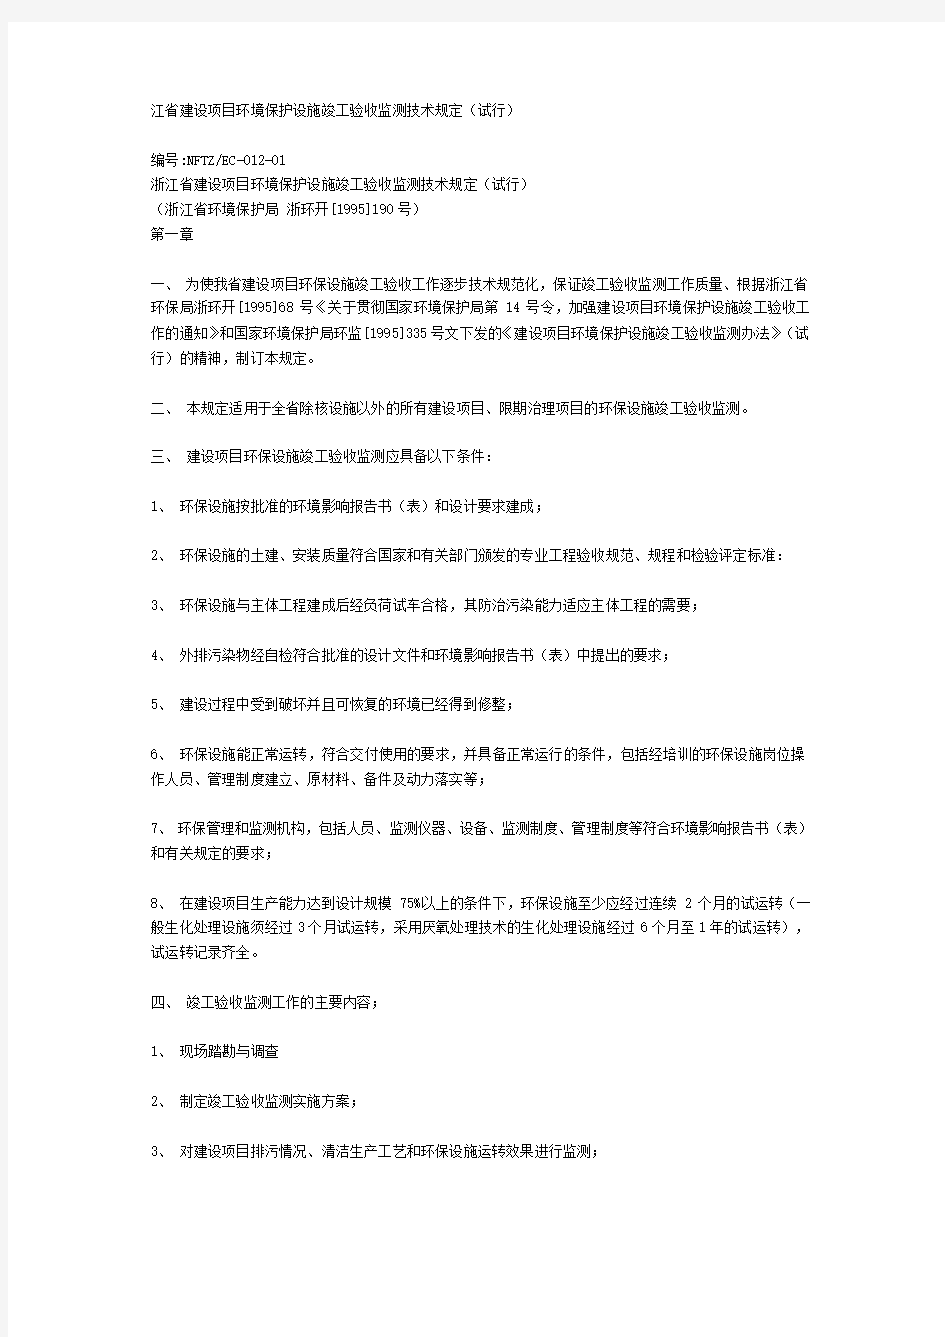 10浙江省建设项目环境保护设施竣工验收监测技术规定